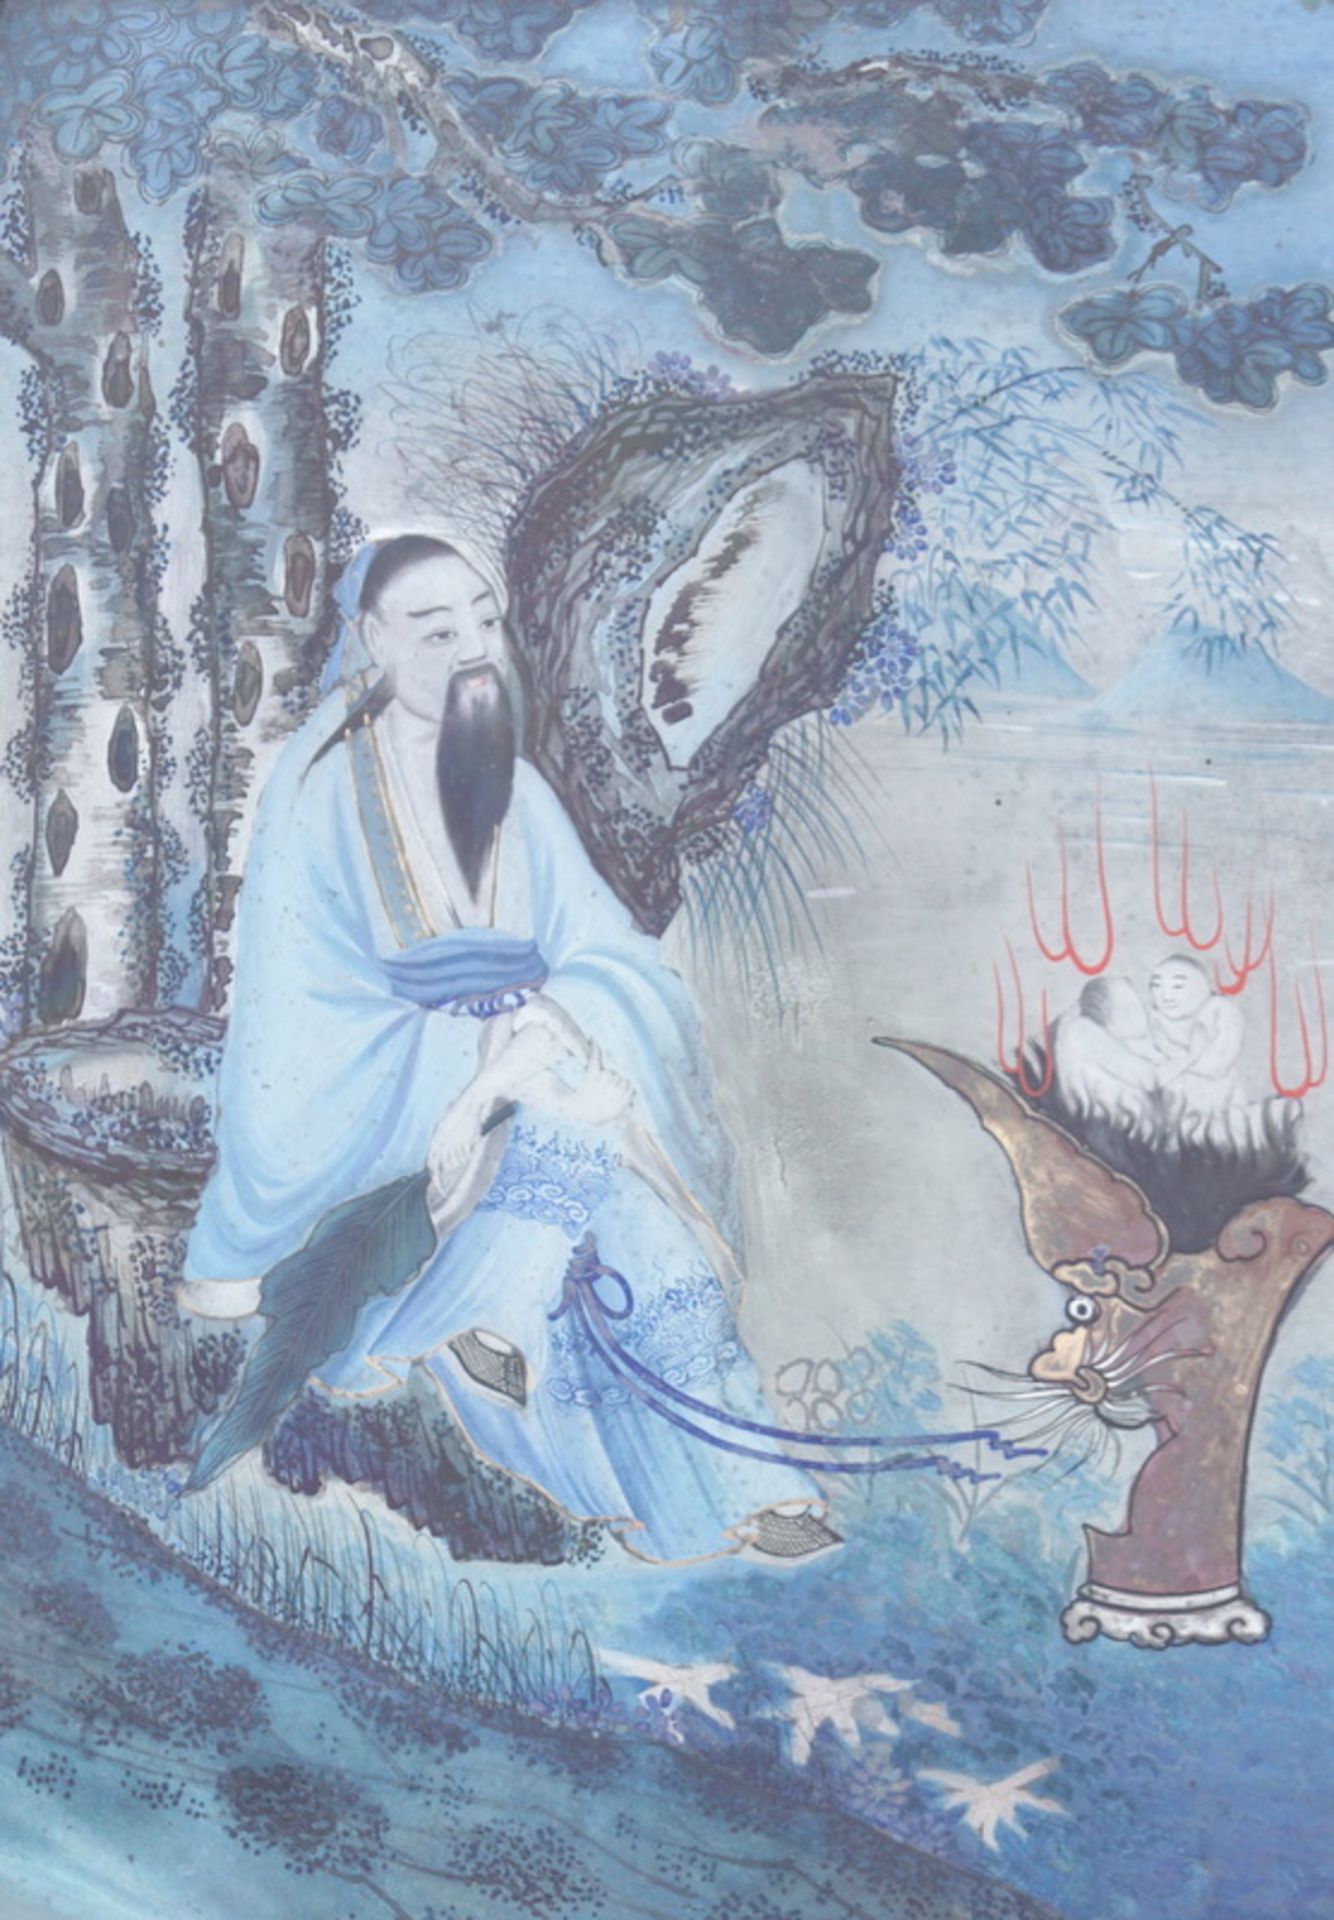 Pärchen chinesische Hinterglasmalereien 19. Jhd. Bolihua Pärchen mythologische Figuren oder